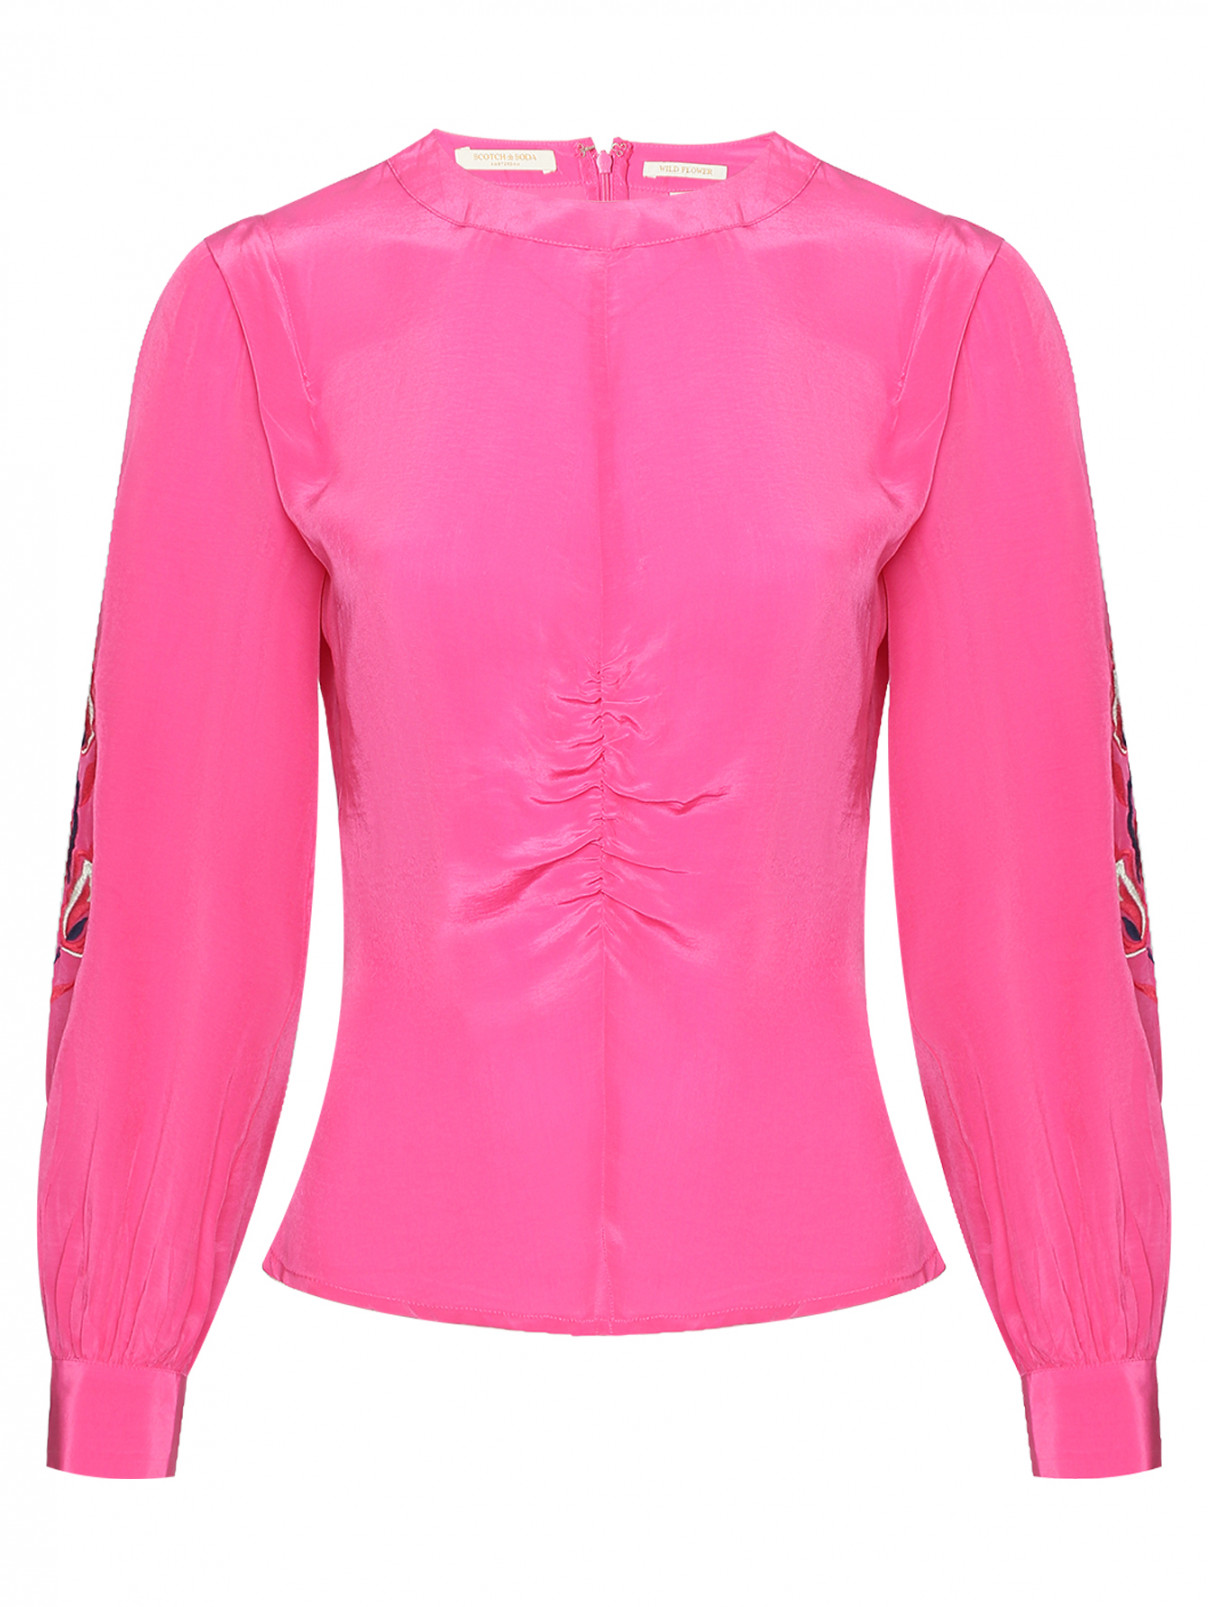 Блуза с вышивкой и круглым воротом Scotch & Soda  –  Общий вид  – Цвет:  Розовый